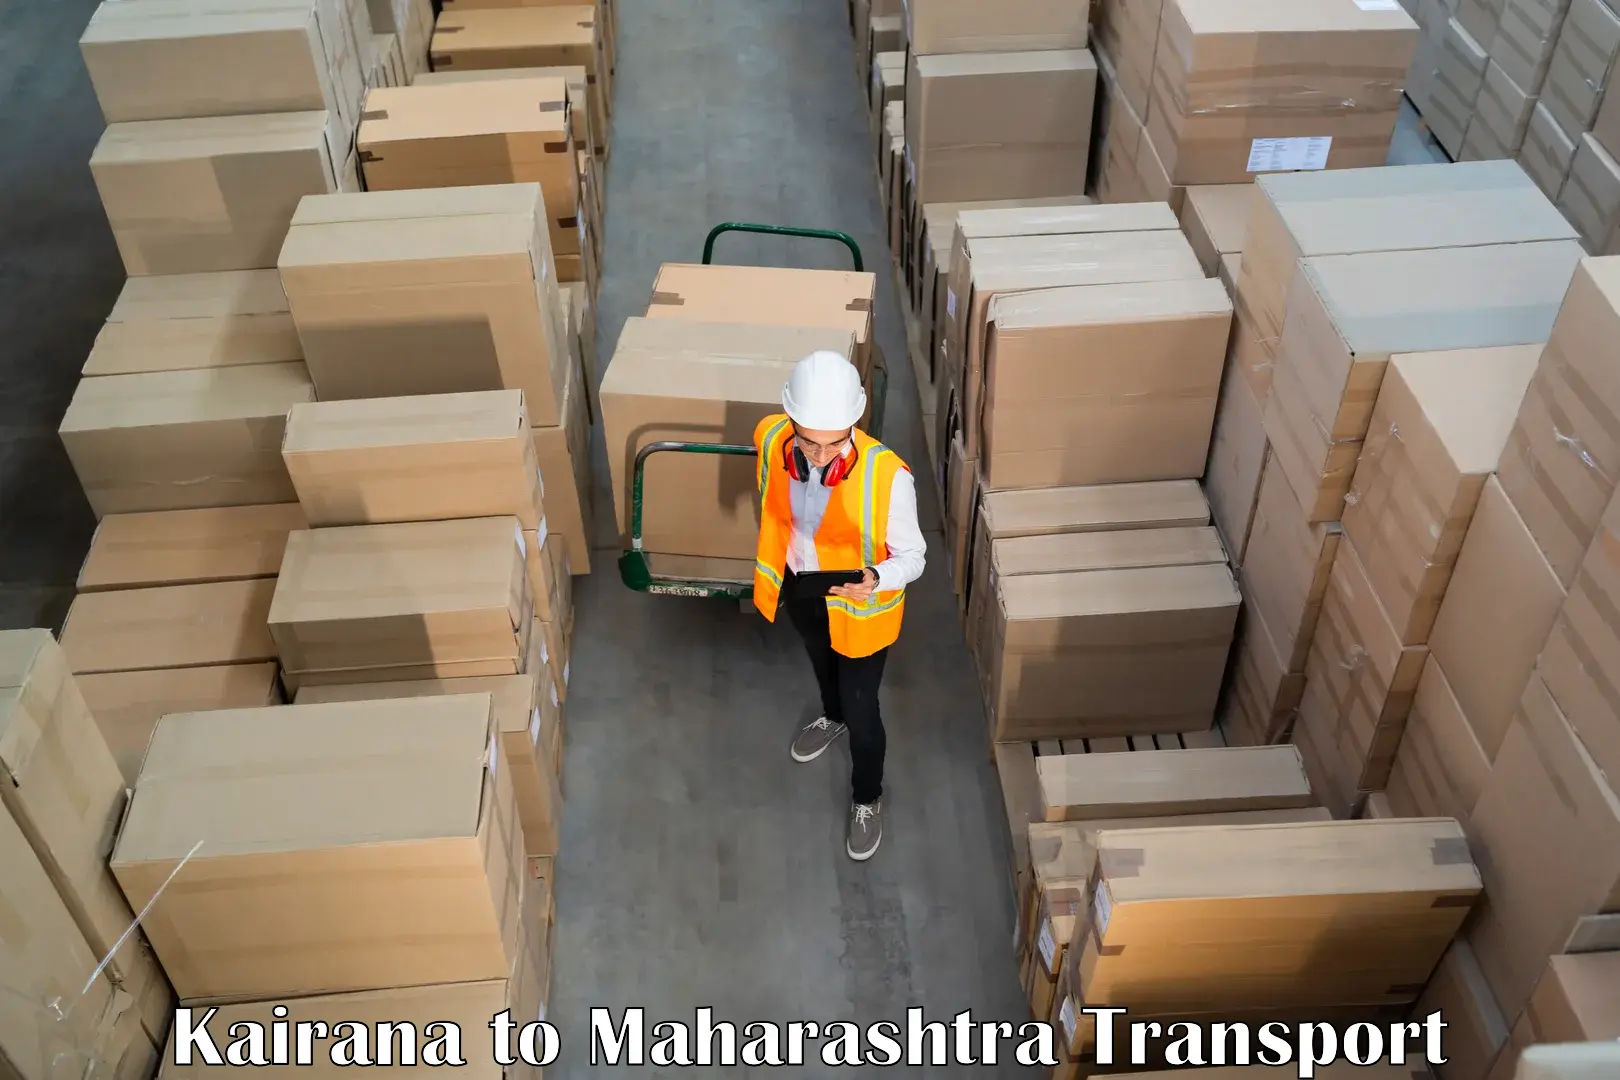 Part load transport service in India Kairana to Maharashtra